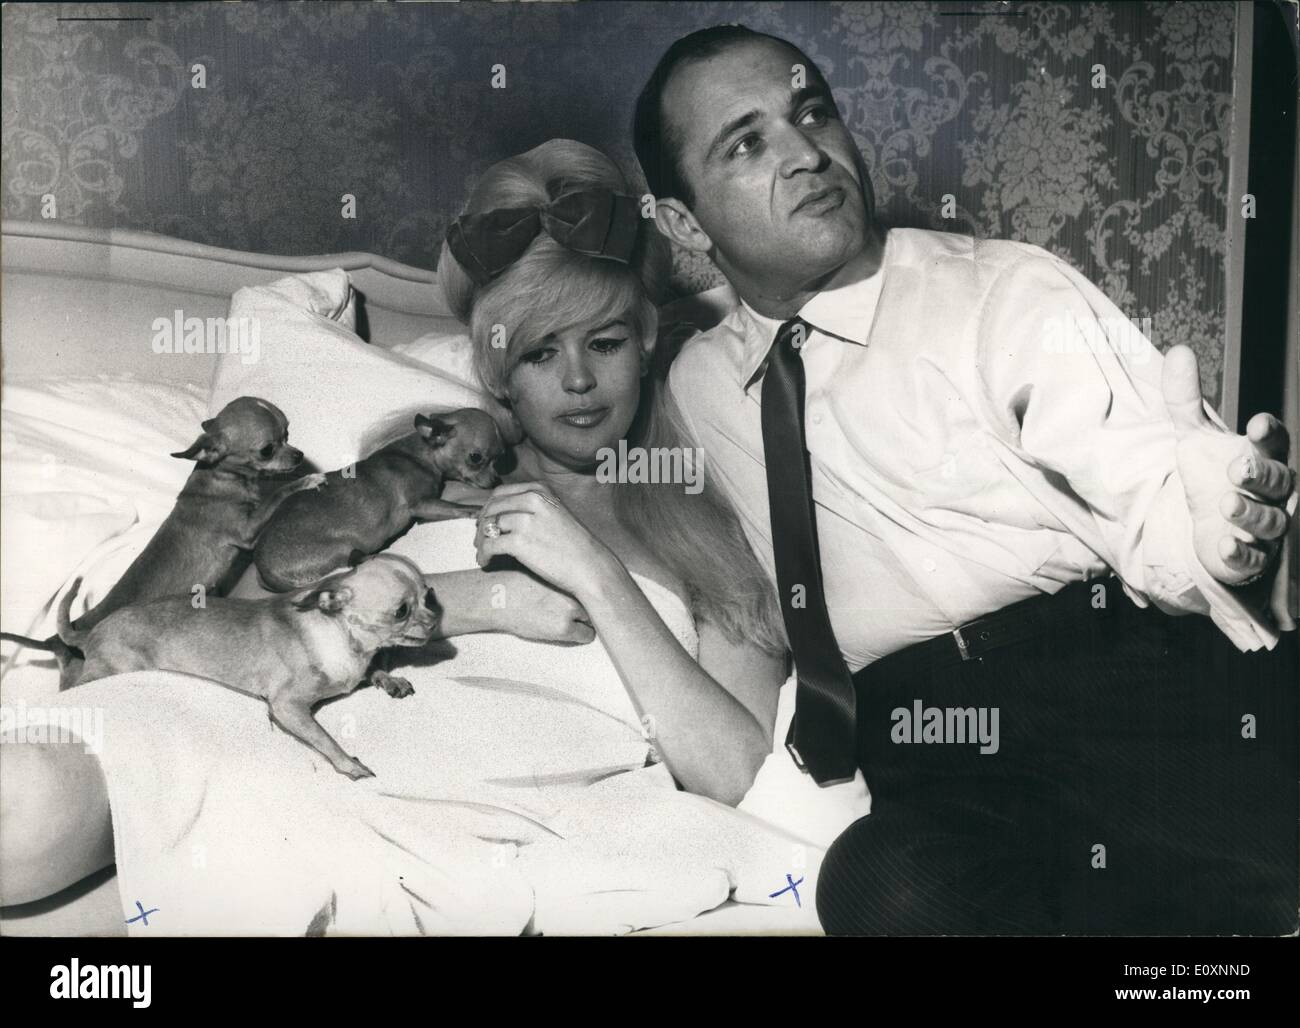 5. Mai 1967 - '' (Illegible)'' & ihre Eskorte Samuel Brody: '' (unleserlich)'' Kurve-Star aus Hollywood, kam als ein matt '' (Illegible)'' nach Deutschland um nehmen Pflege von der GI '' (Illegible)'', er sich selbst kümmern. Sie bekam ein Schmerz '' (Illegible)'' Usion des Blutes während ihres Auftritts in Wiesbaden und der Arzt verordnet ihr im Bett zu bleiben. Unser Foto zeigt, hat dieser kleine Vorfall nicht ihr traurig gemacht. Sie räkelt sich bequem über unter der weichen Federkissen und genießt die unerwartete Pause in ihrer tour Stockfoto